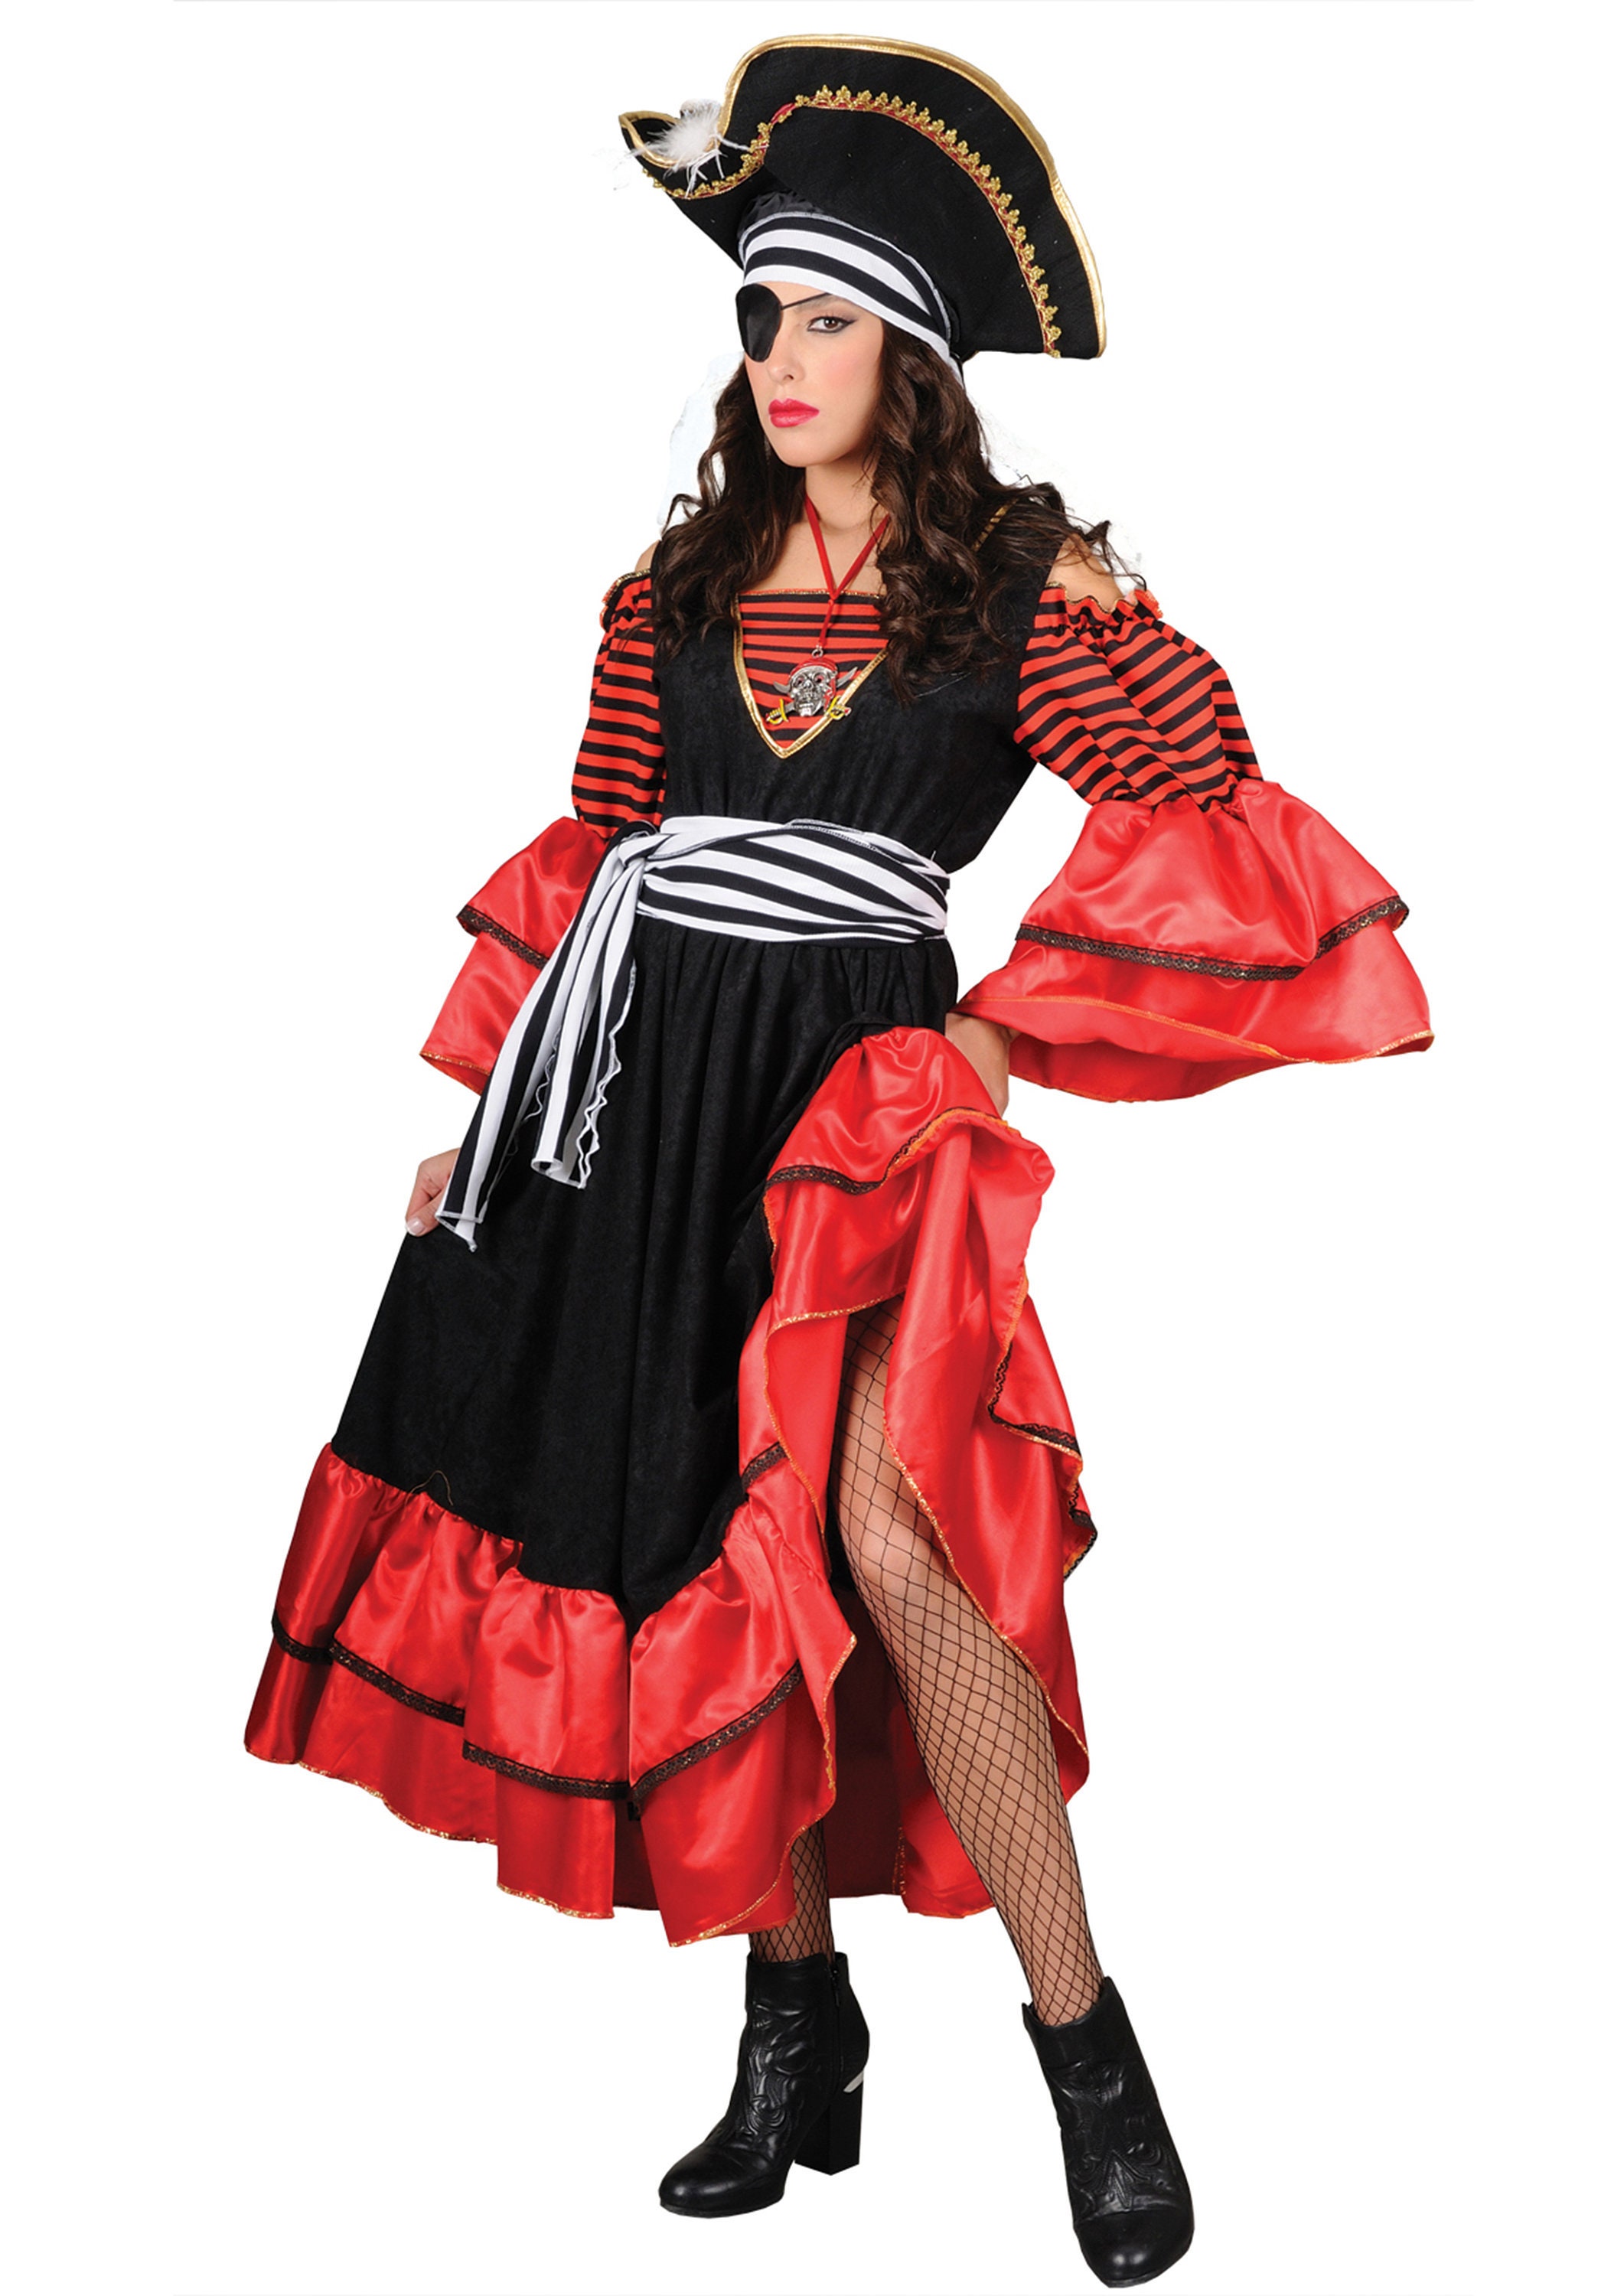 vestiti di carnevale adulti - Google Search  Pirate costume, Female pirate  costume, Pirate halloween costumes